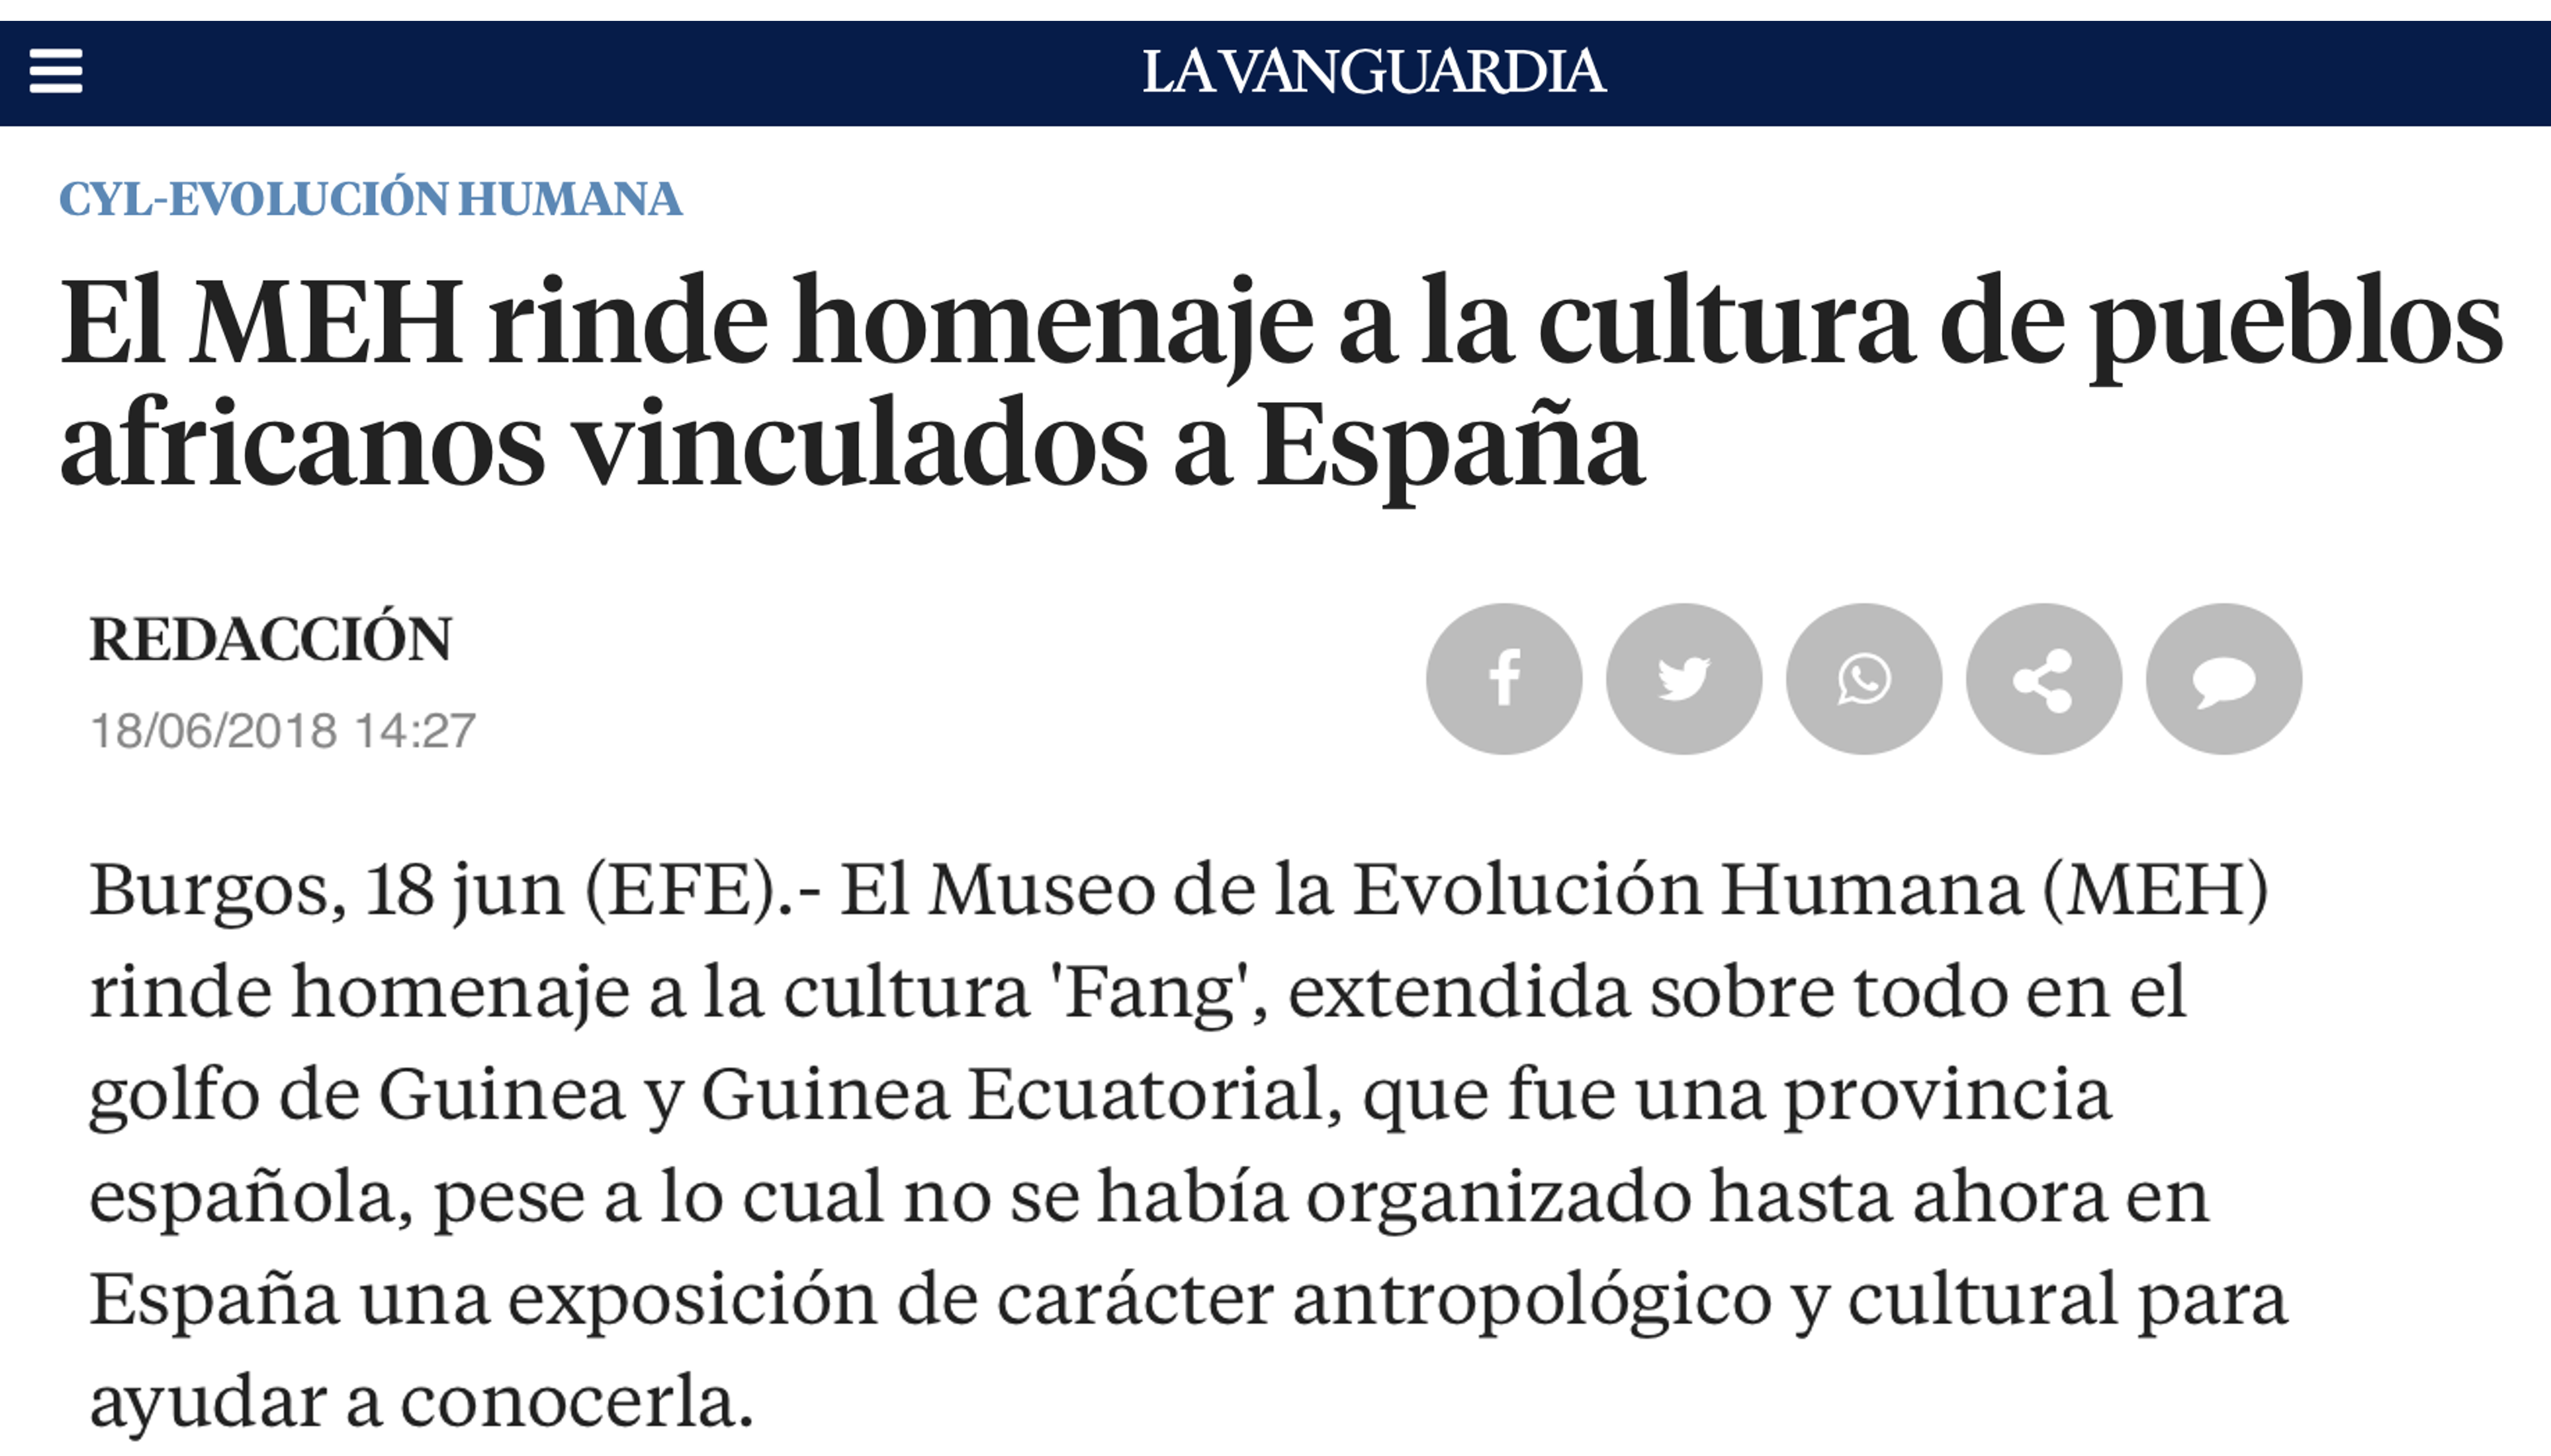 La Vanguardia, 18.06.2018